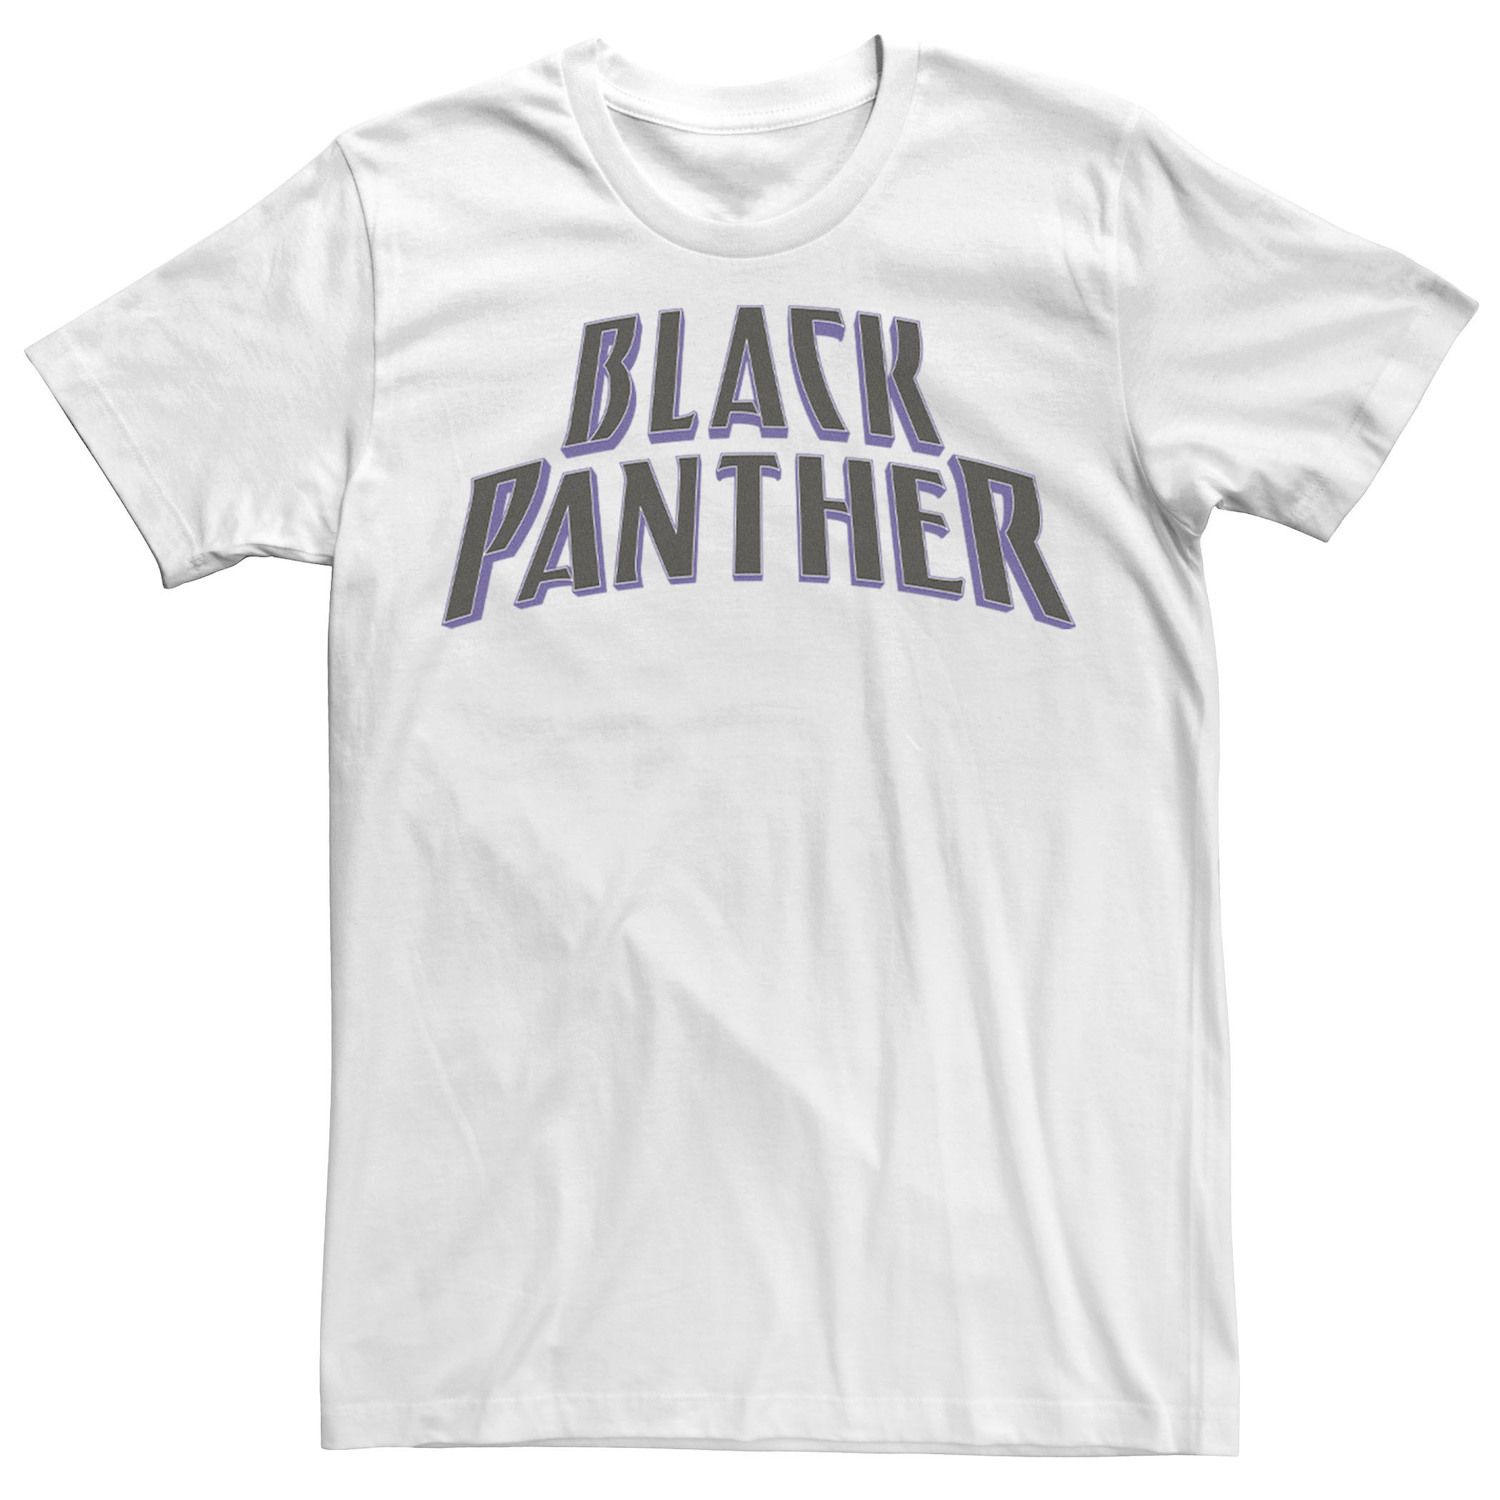 Мужская футболка с логотипом фильма «Черная пантера» Marvel